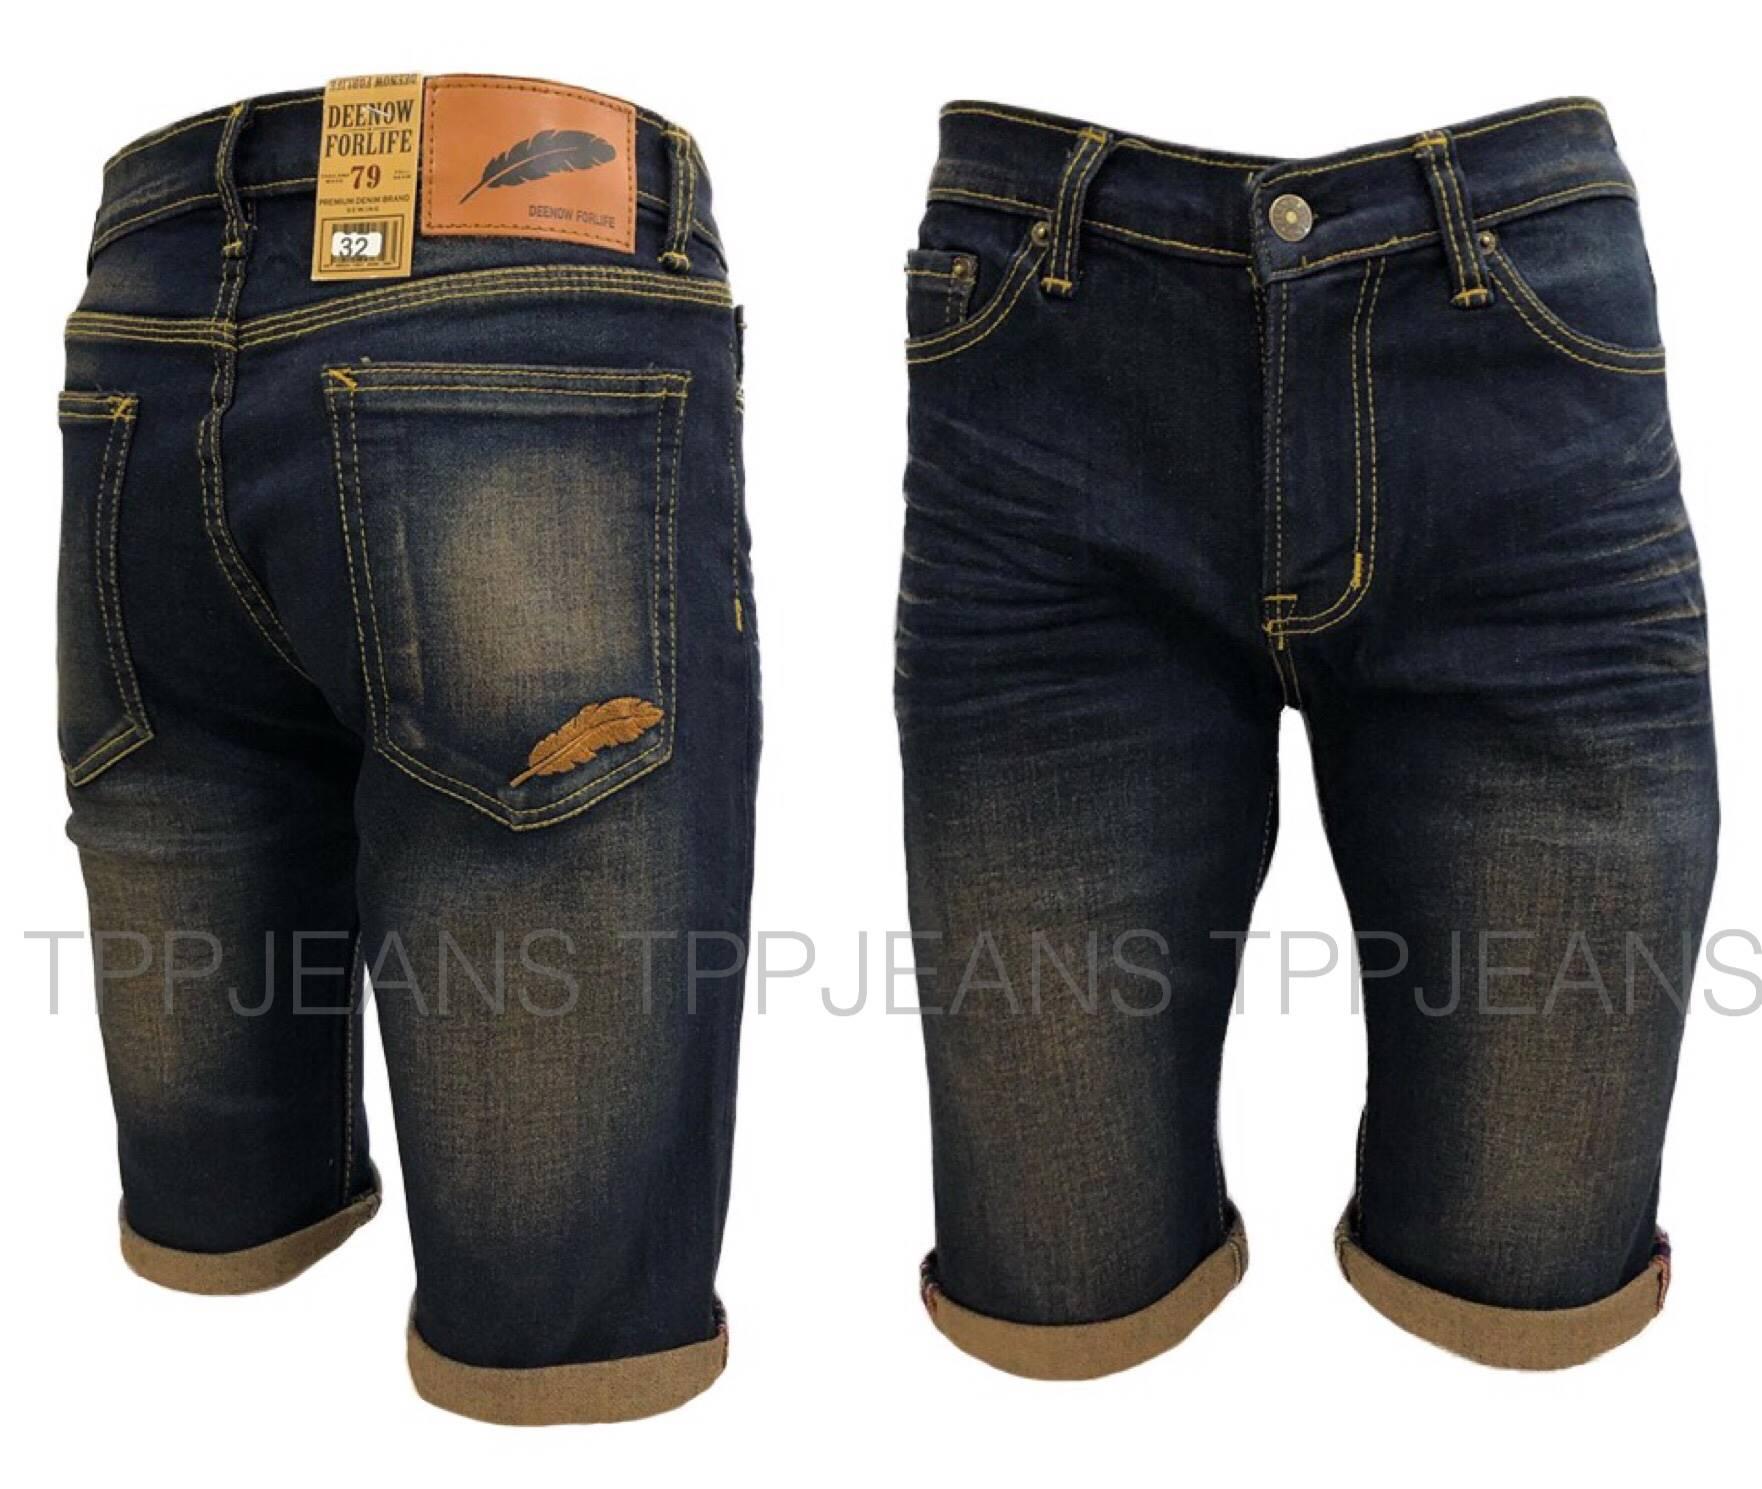 TPPJEANS Men's Shorts DN Jeans กางเกงยีนส์ขาสั้นยีนส์ยืดสีฟอกสนิม ปักขนนกกระเป๋าหลัง งานตัดเย็บอย่างดี Size 28-44 รับชำระปลายทาง